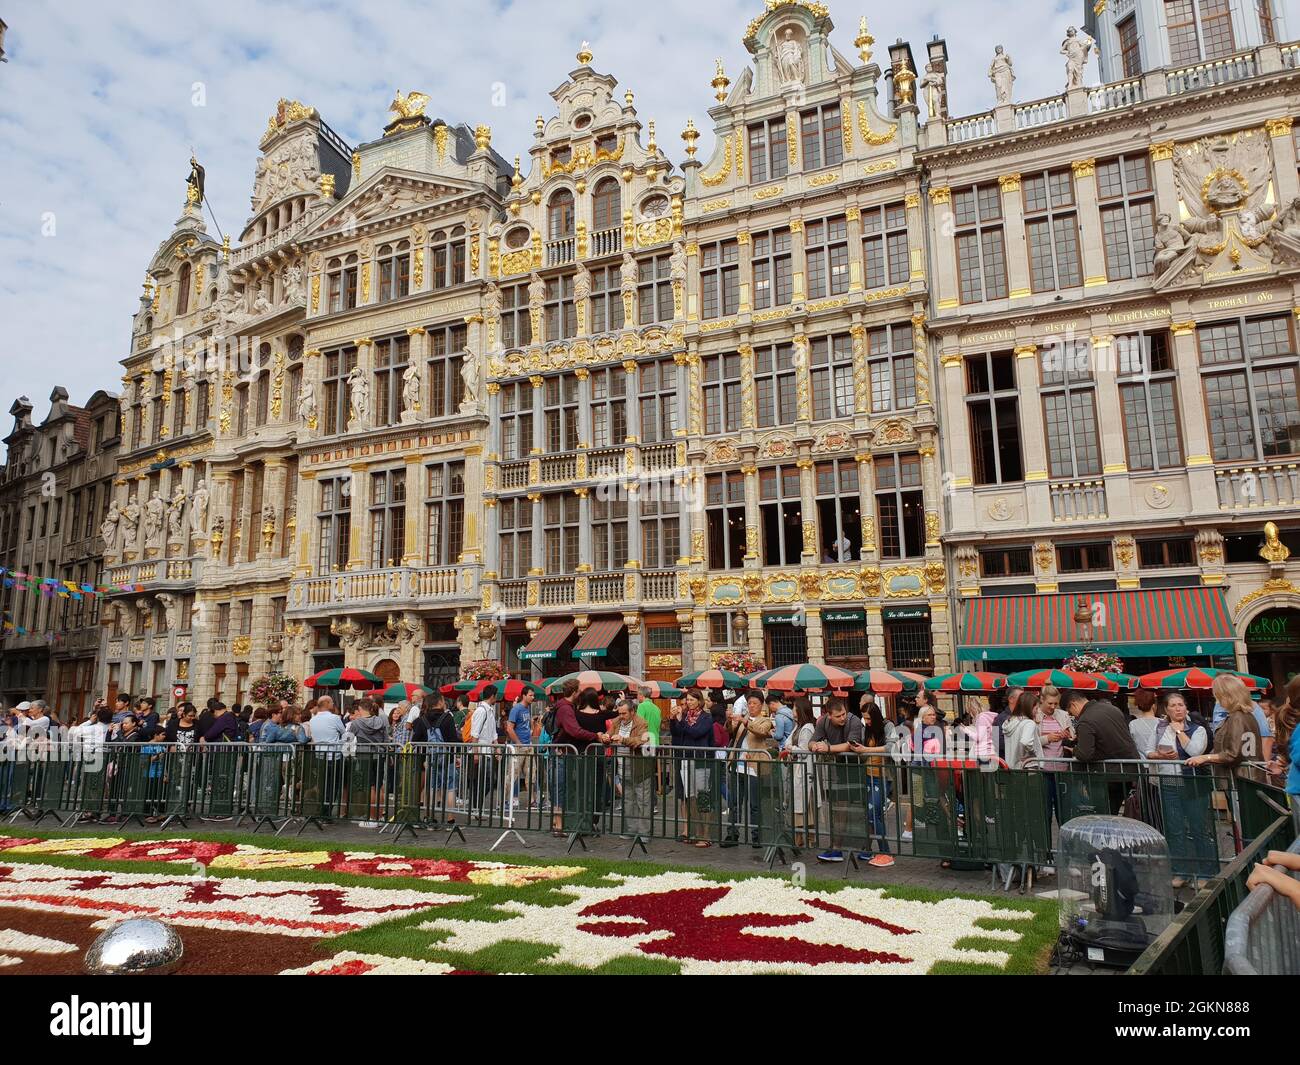 Brüssel - Grand Place - Herz und Bühne der Stadt (Blumenteppich 2018) Stock Photo